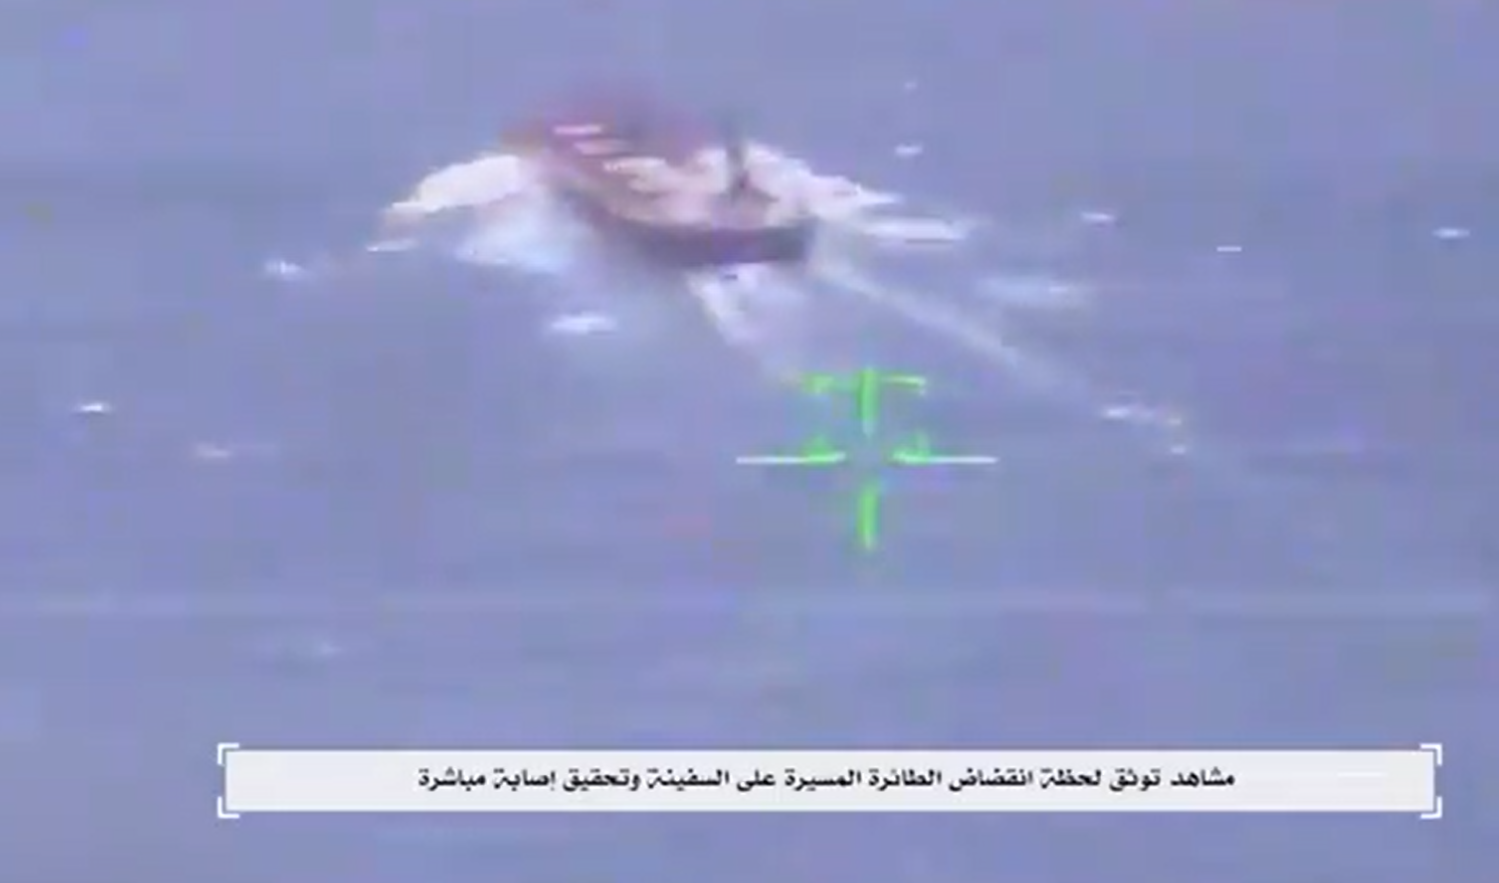 إصابة مباشرة.. مسيرة حوثية انتحارية تفجر سفينة كانت في طريقها لإسرائيل (فيديو)